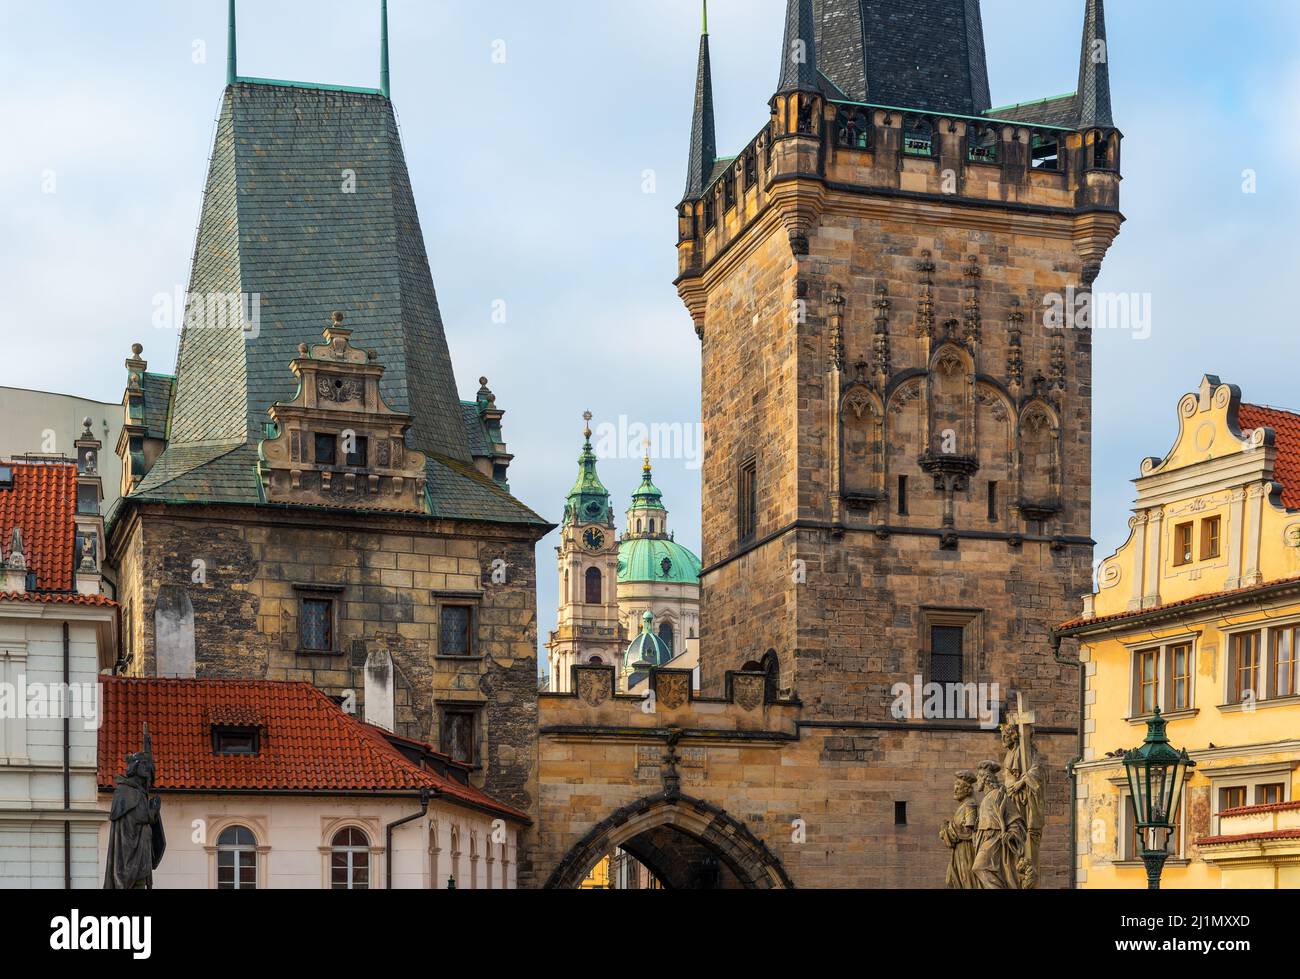 Arquitectura tradicional de torres, fachadas y cúpulas al amanecer, Puente de Carlos, Praga, República Checa. Foto de stock